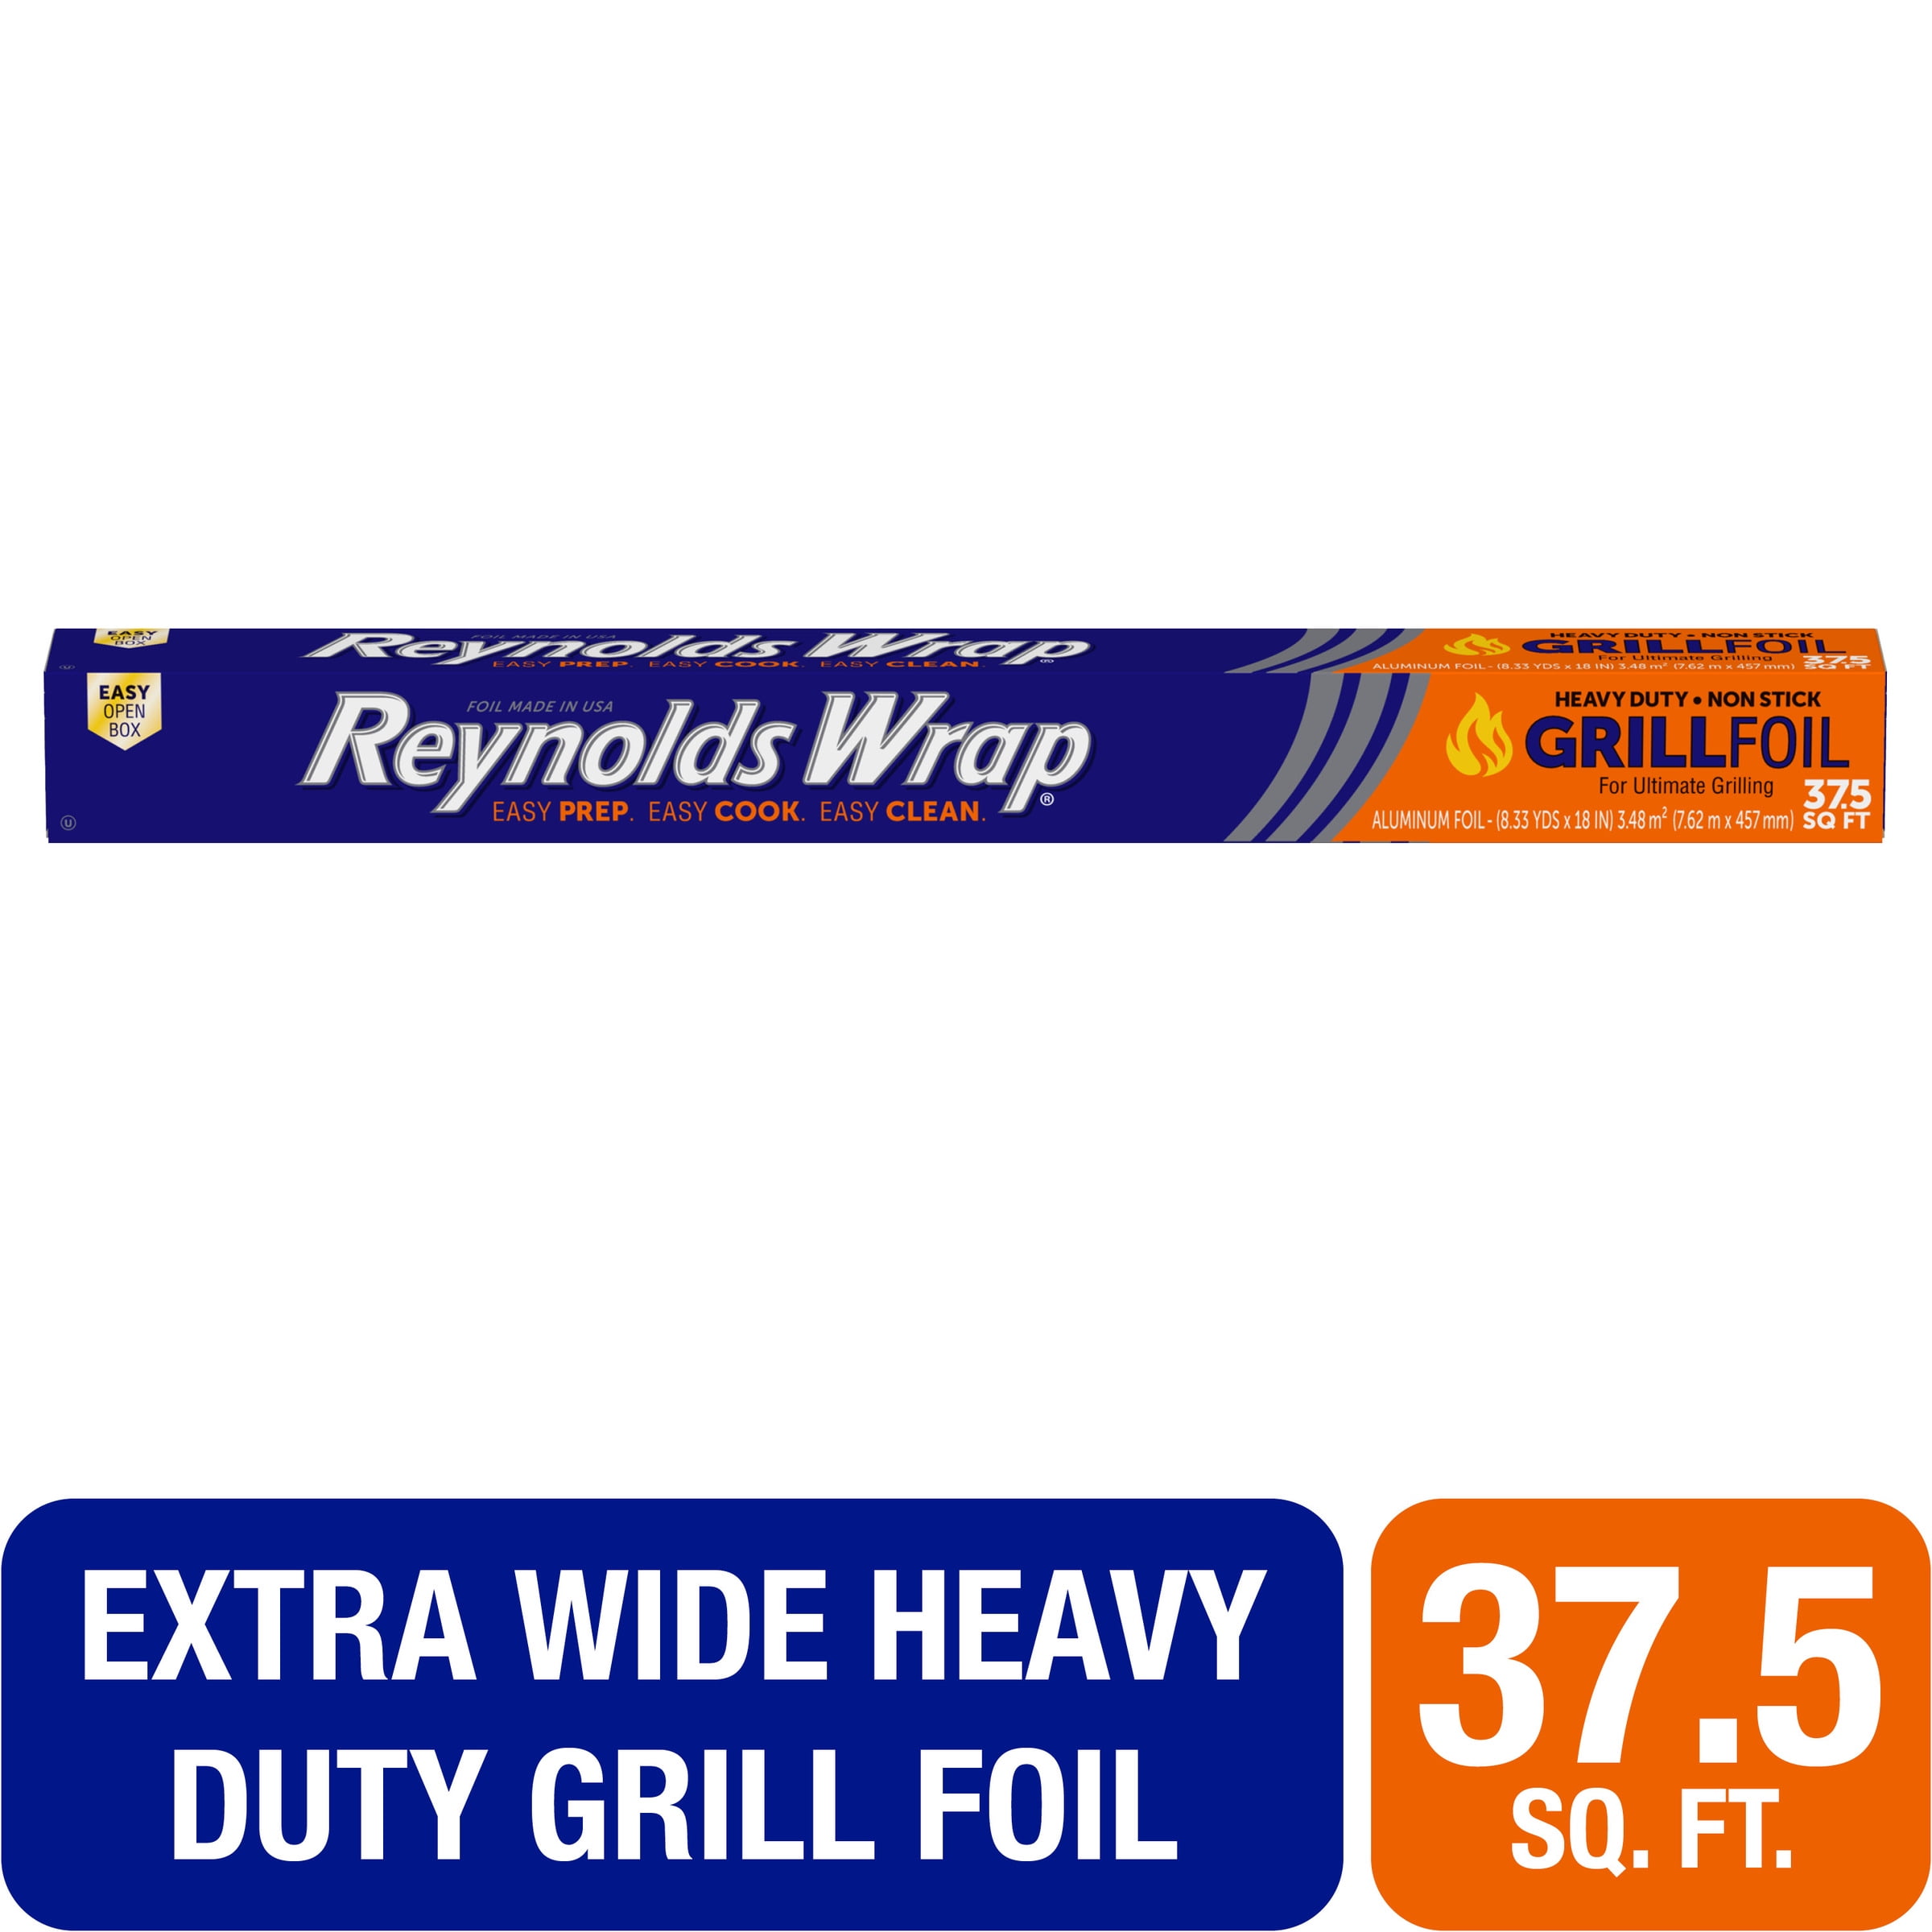 Reynolds Wrap Heavy Duty Non-Stick Aluminum Foil 70 sq. ft. Box